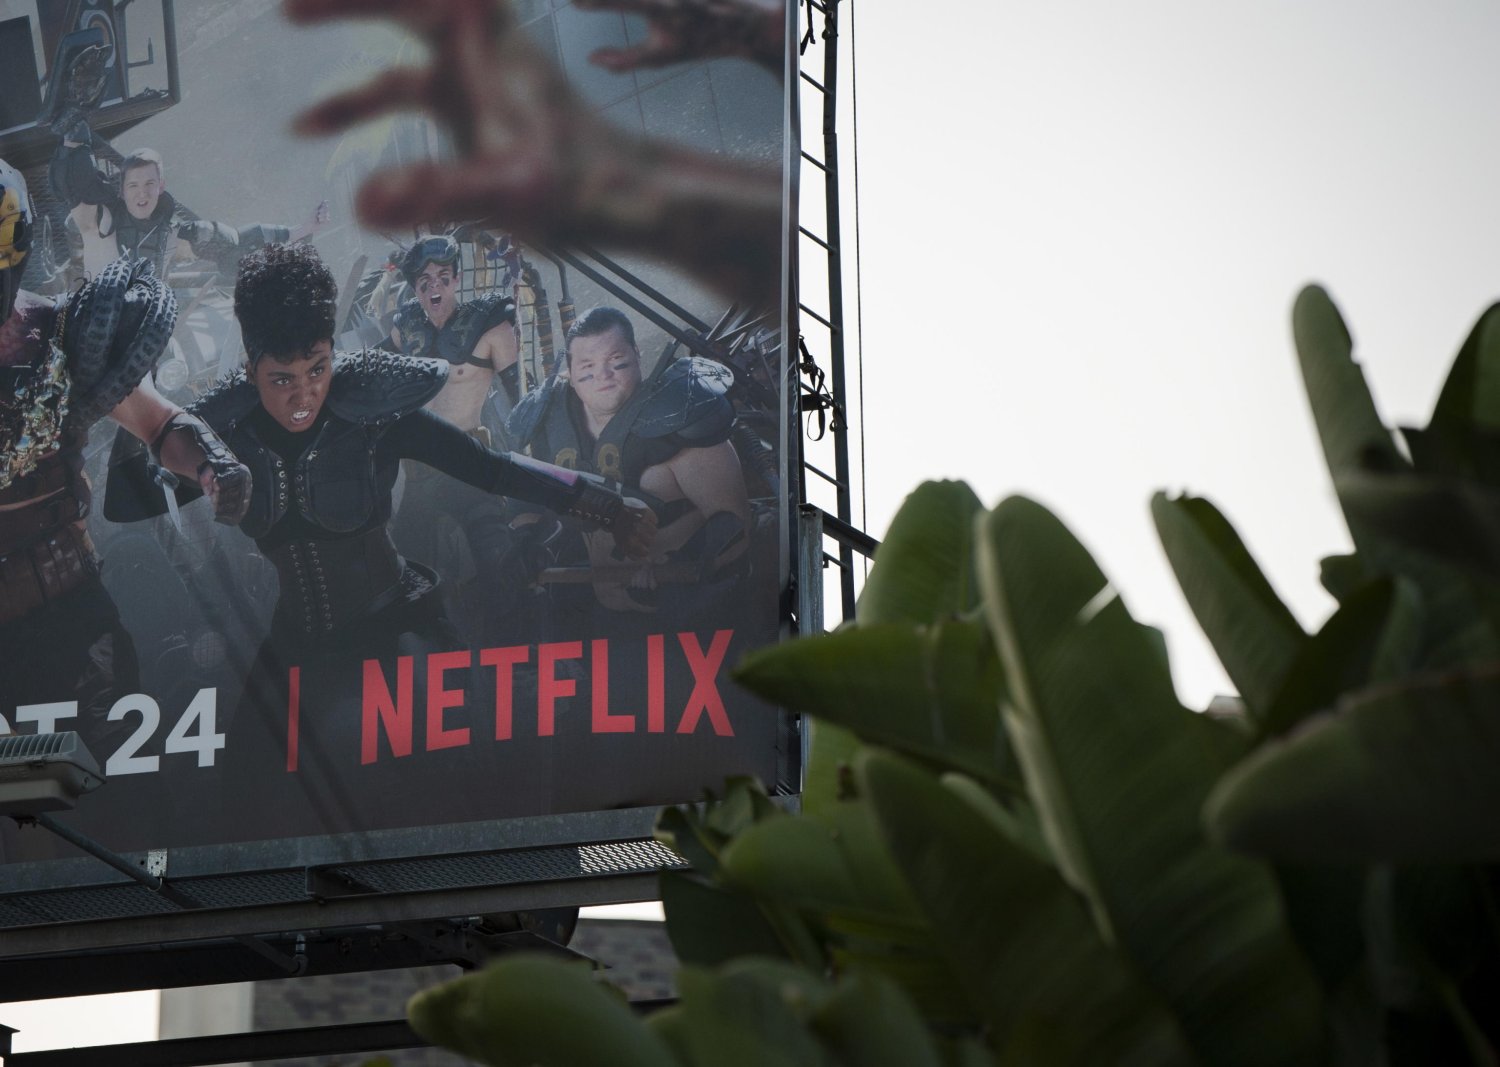 Pandemia spinge Netflix che archivia 2020 con 203,7 milioni di abbonati